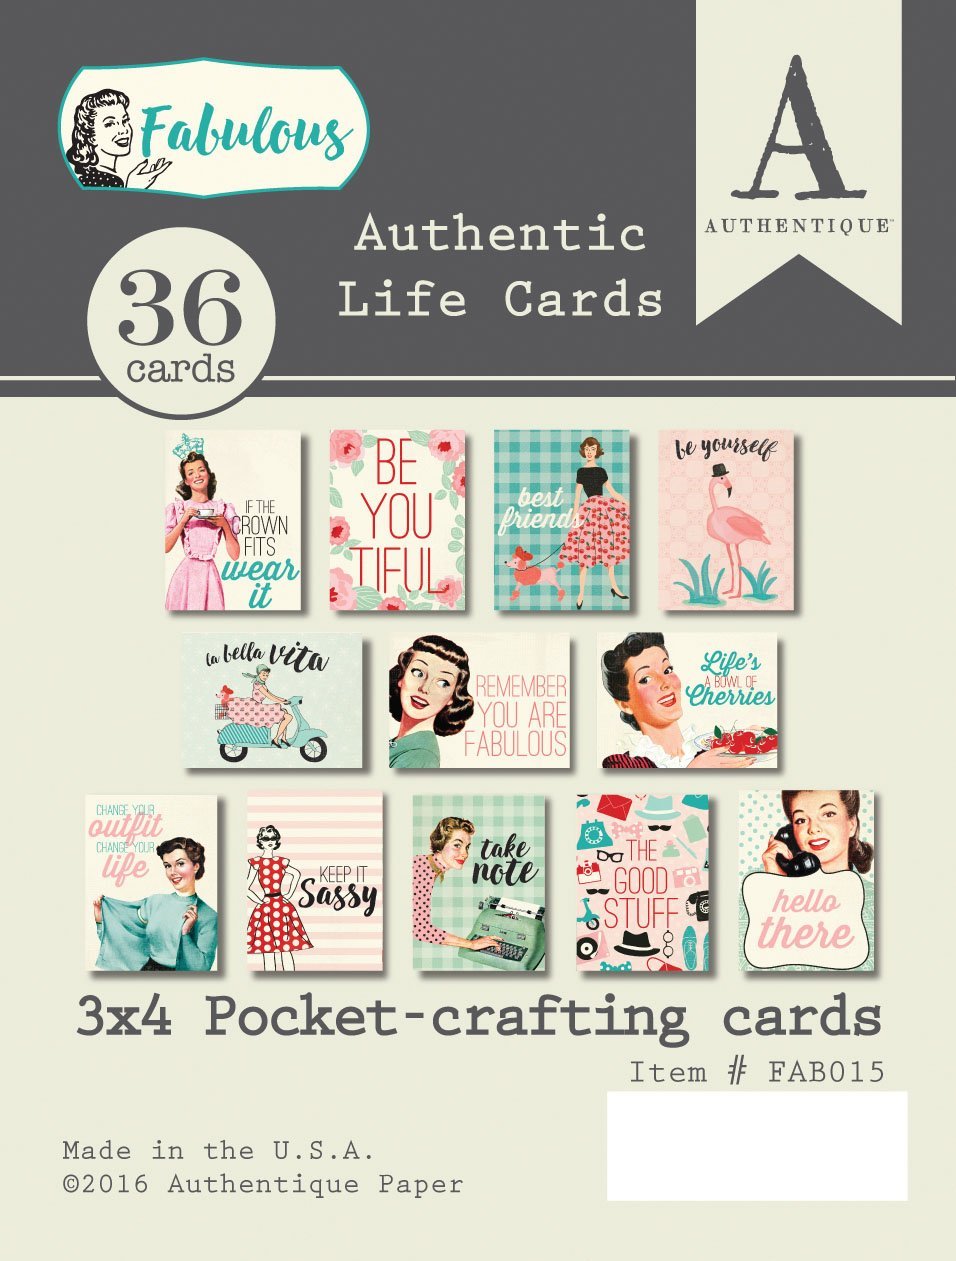 Authentique Authentic Life Cards Fabulous (FAB015)